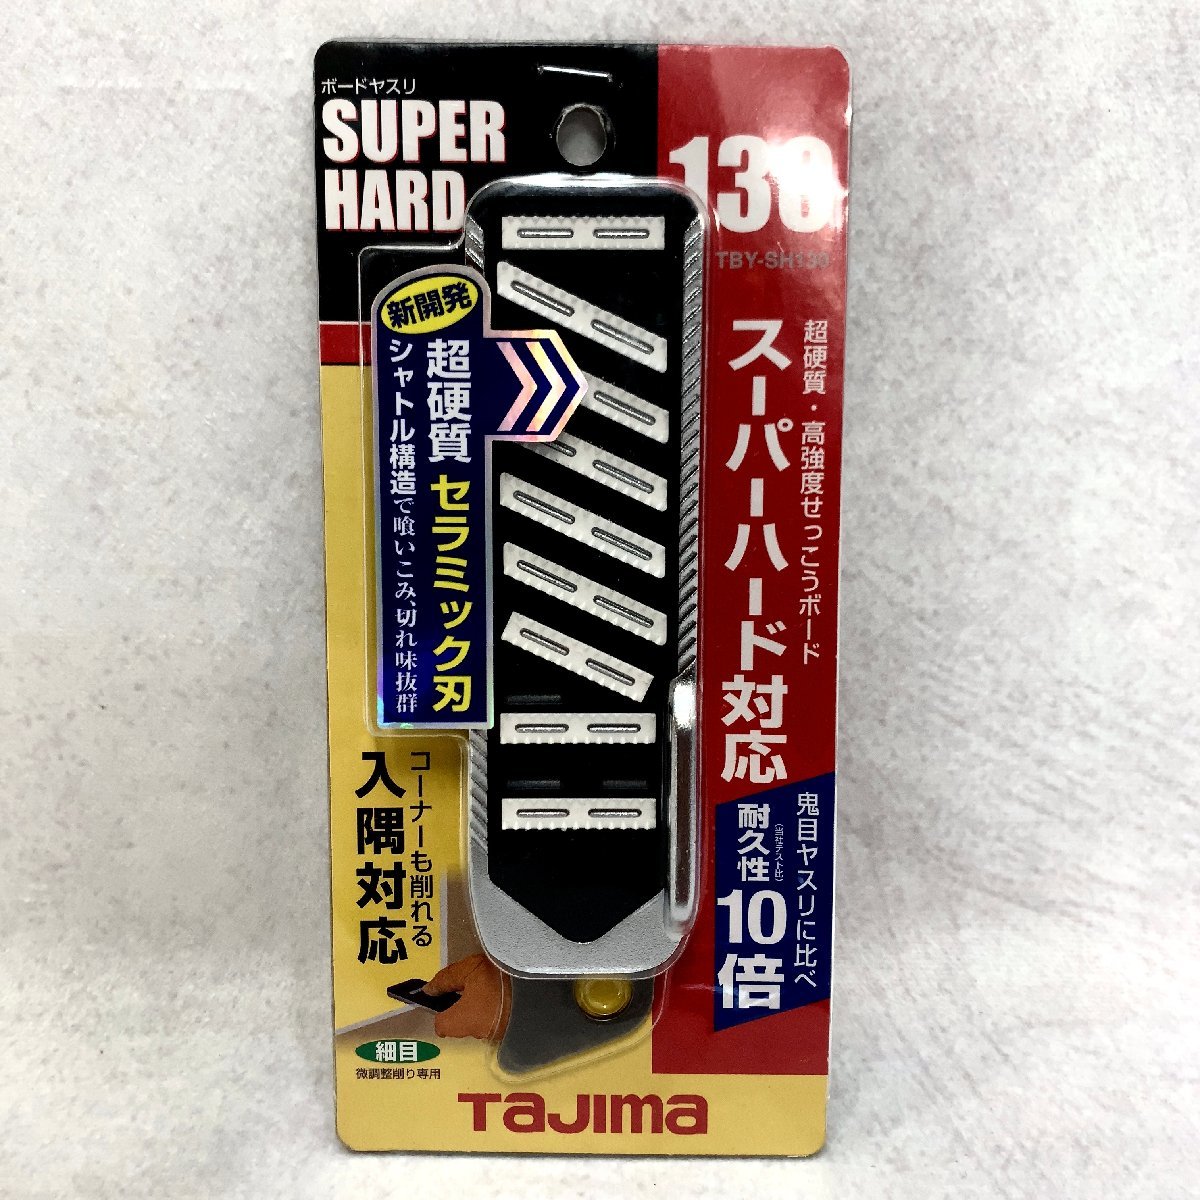 未使用 Tajima ボードヤスリ スーパーハード TBY-SH130 細目 TBY-SH180 荒目 3点 セット セラミック刃 超硬質石膏ボード やすり 工具 DIY_画像3